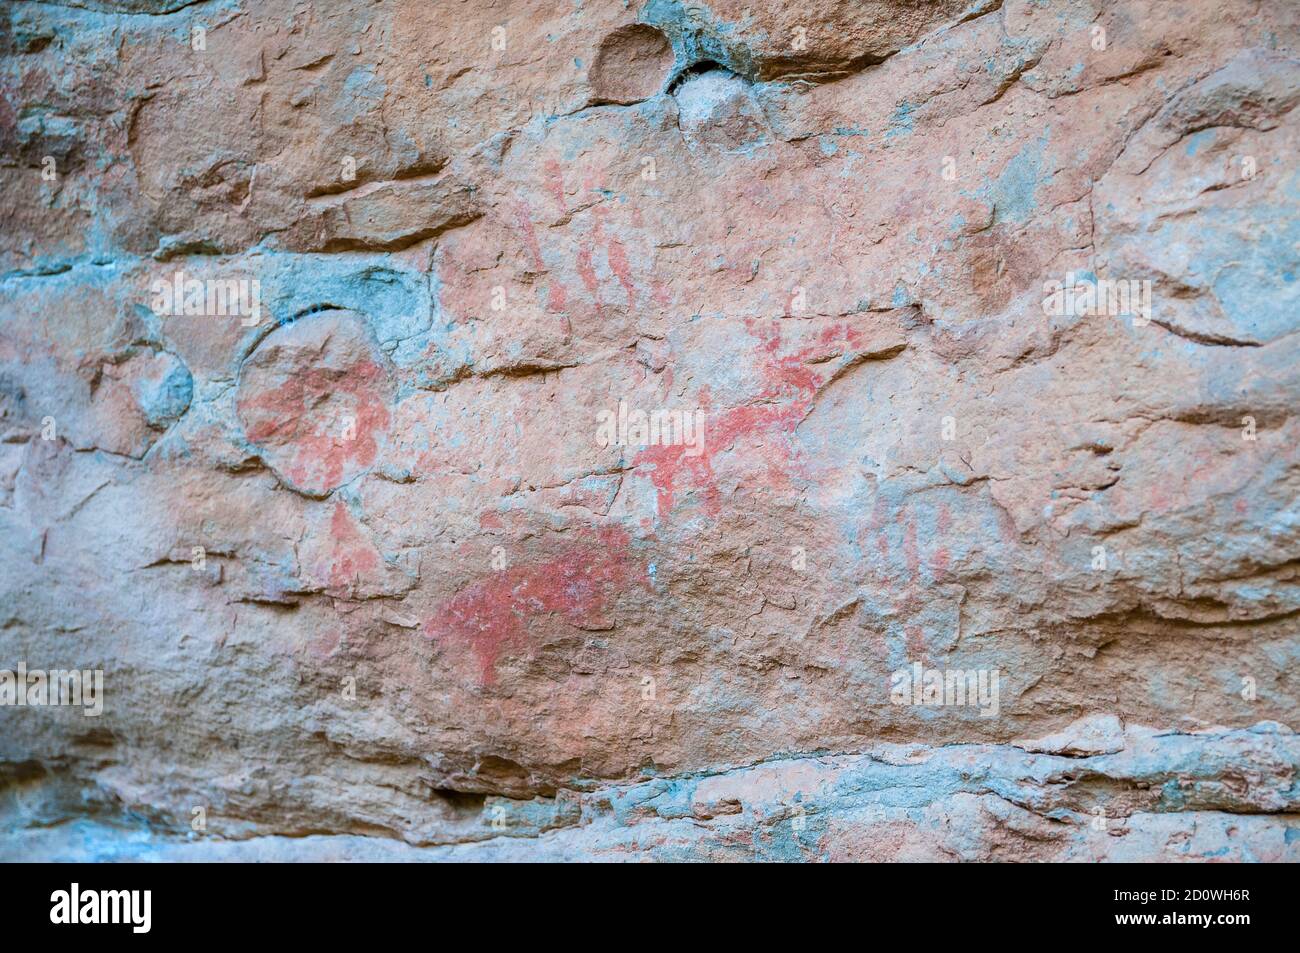 Pitture rupestri, quadrupidi, rappresentazioni a forma di stella e bar, Sant Fruitós de Bages, Catalogna, Spagna Foto Stock